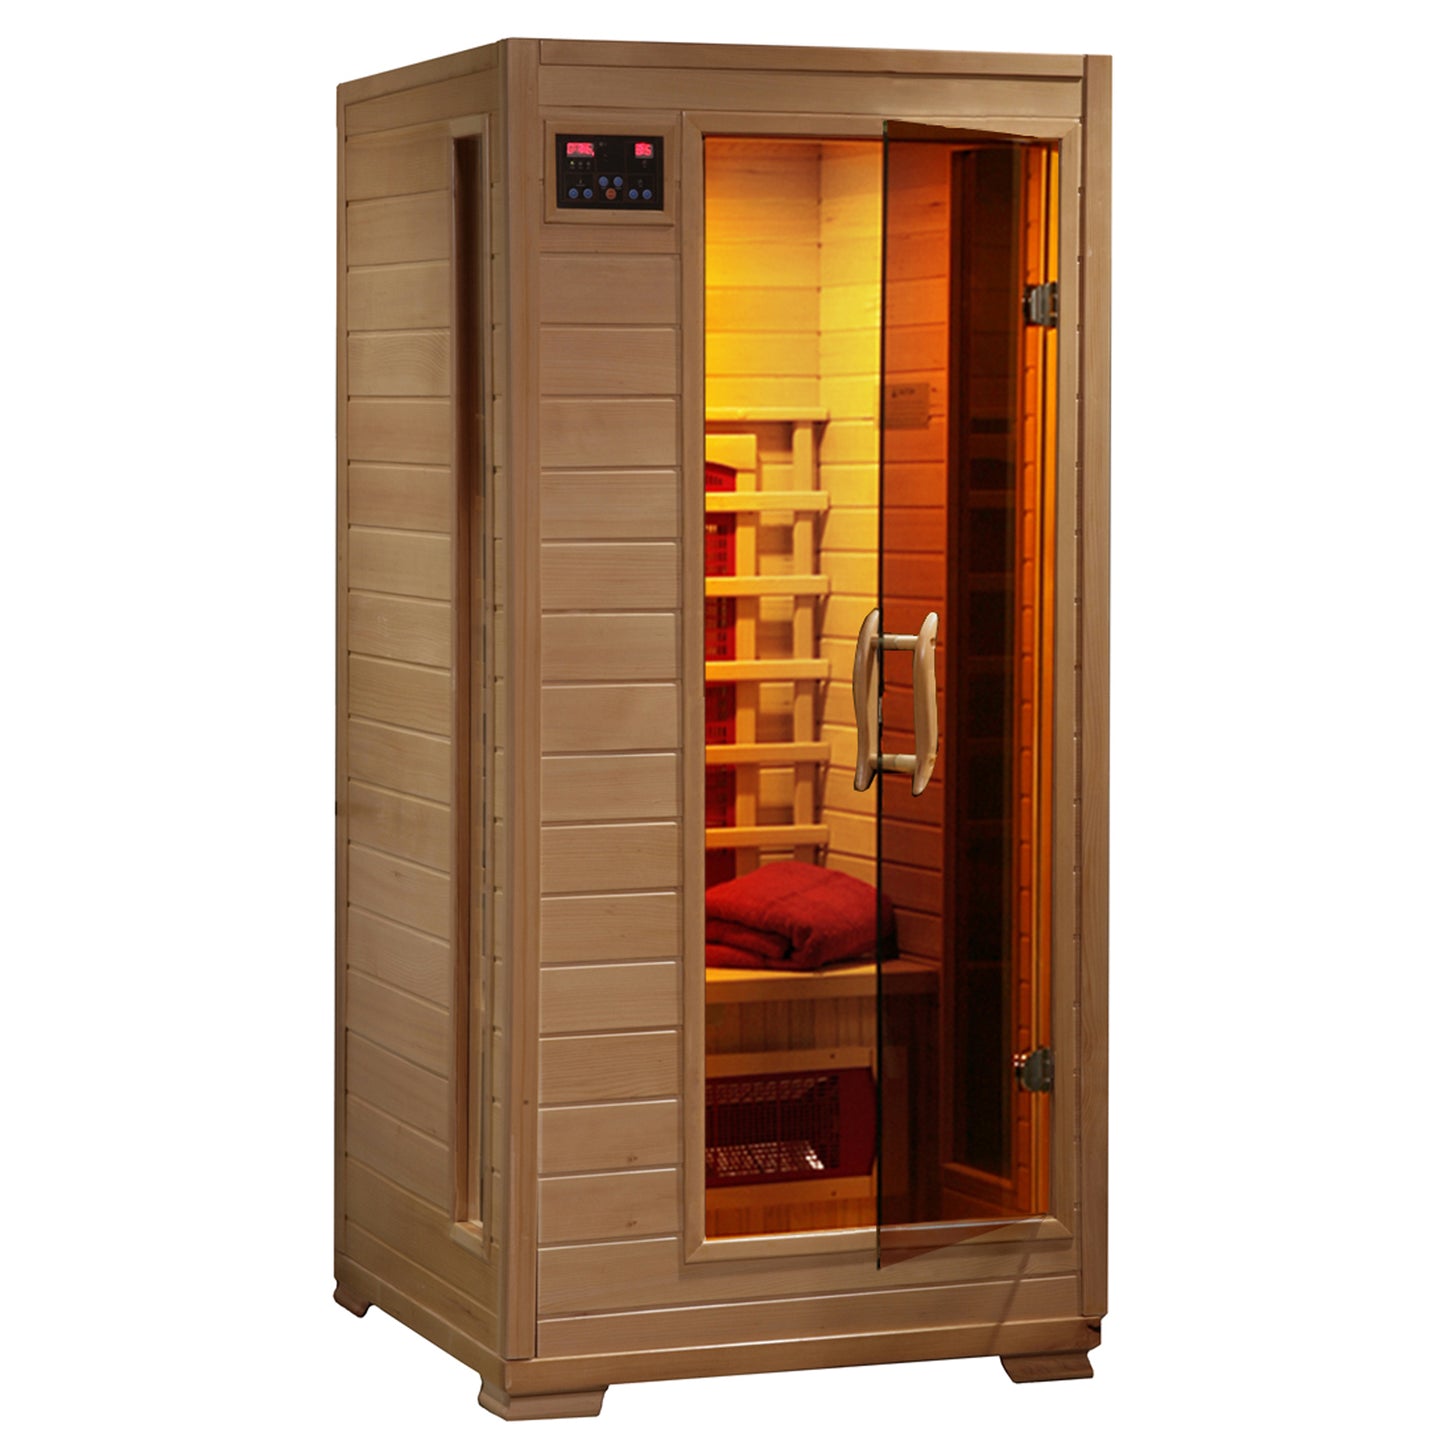 1 Person Infrared Sauna with Ceramic Heaters - Buena Vista - SA2400